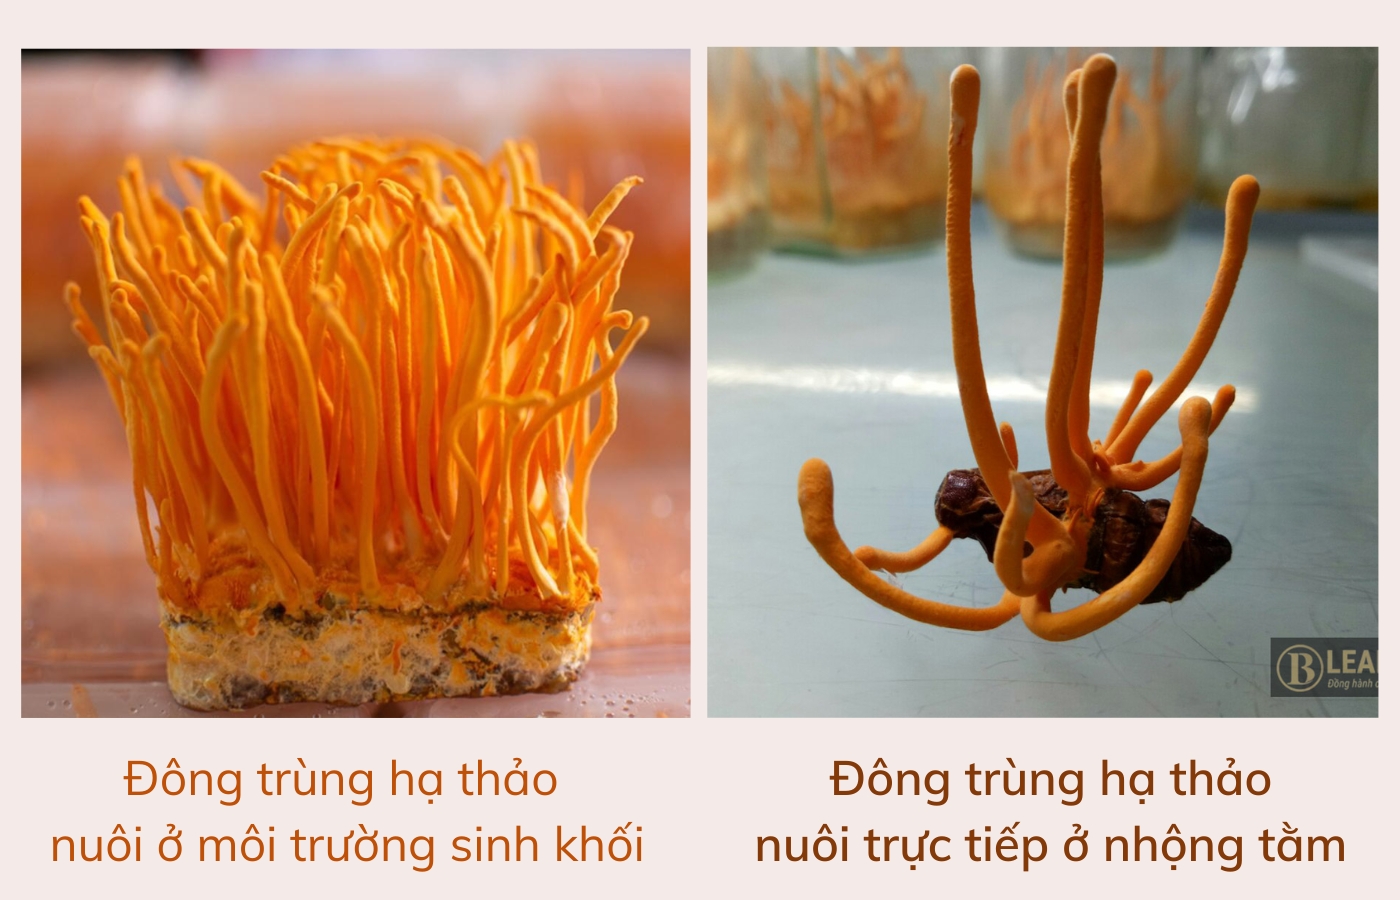 Đông trùng hạ thảo Việt Nam nuôi ở môi trường sinh khối và cấy trực tiếp vào nhộng tằm